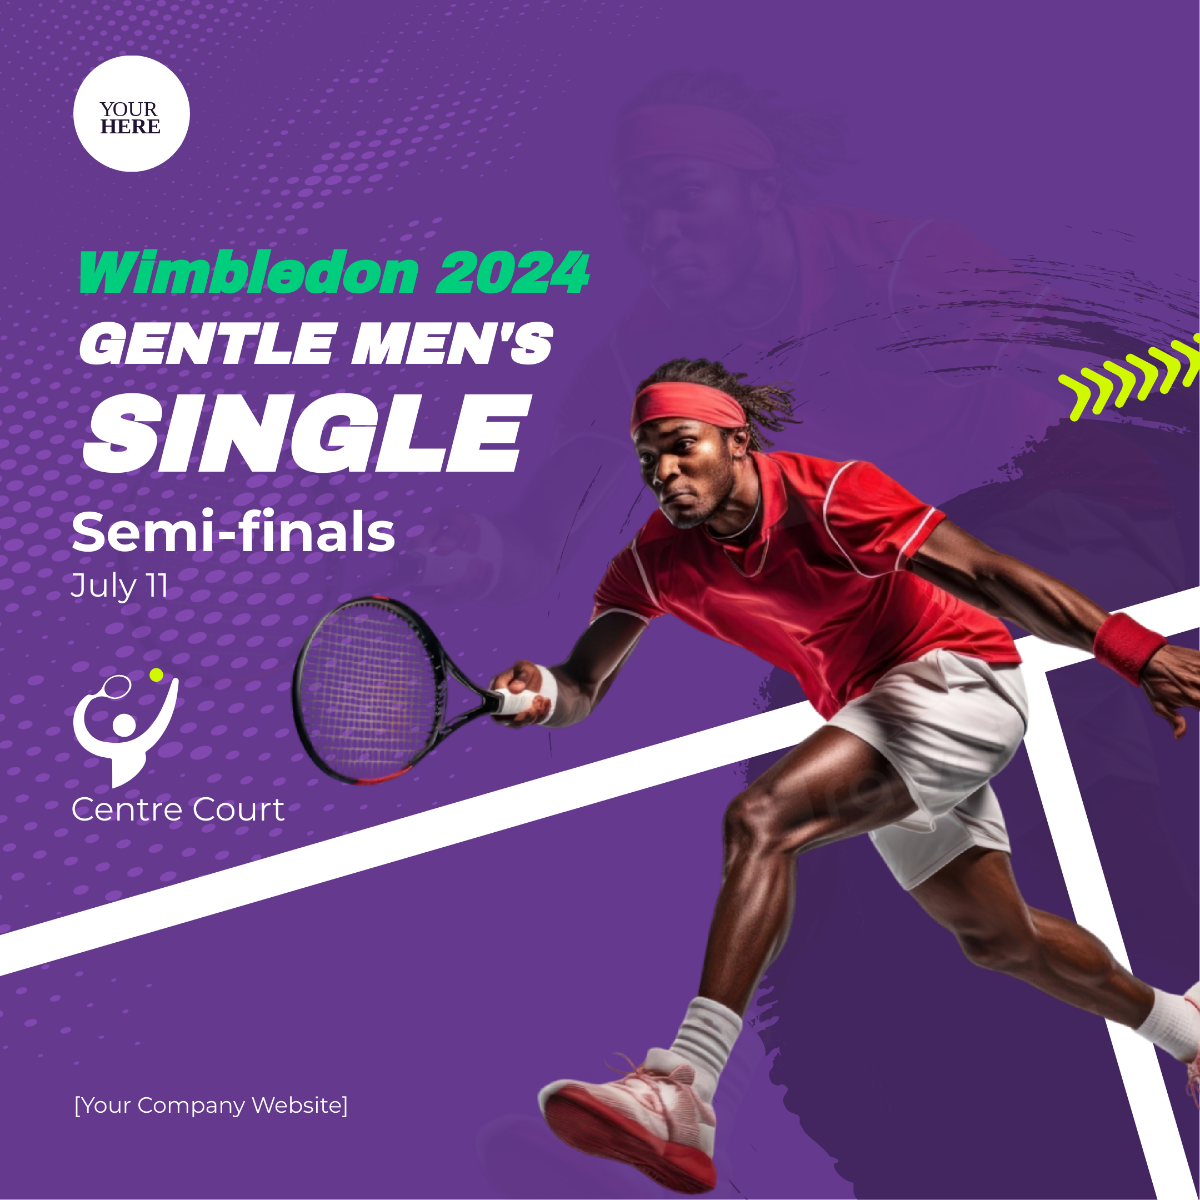 Wimbledon Gentlemen's Singles Semi-finals